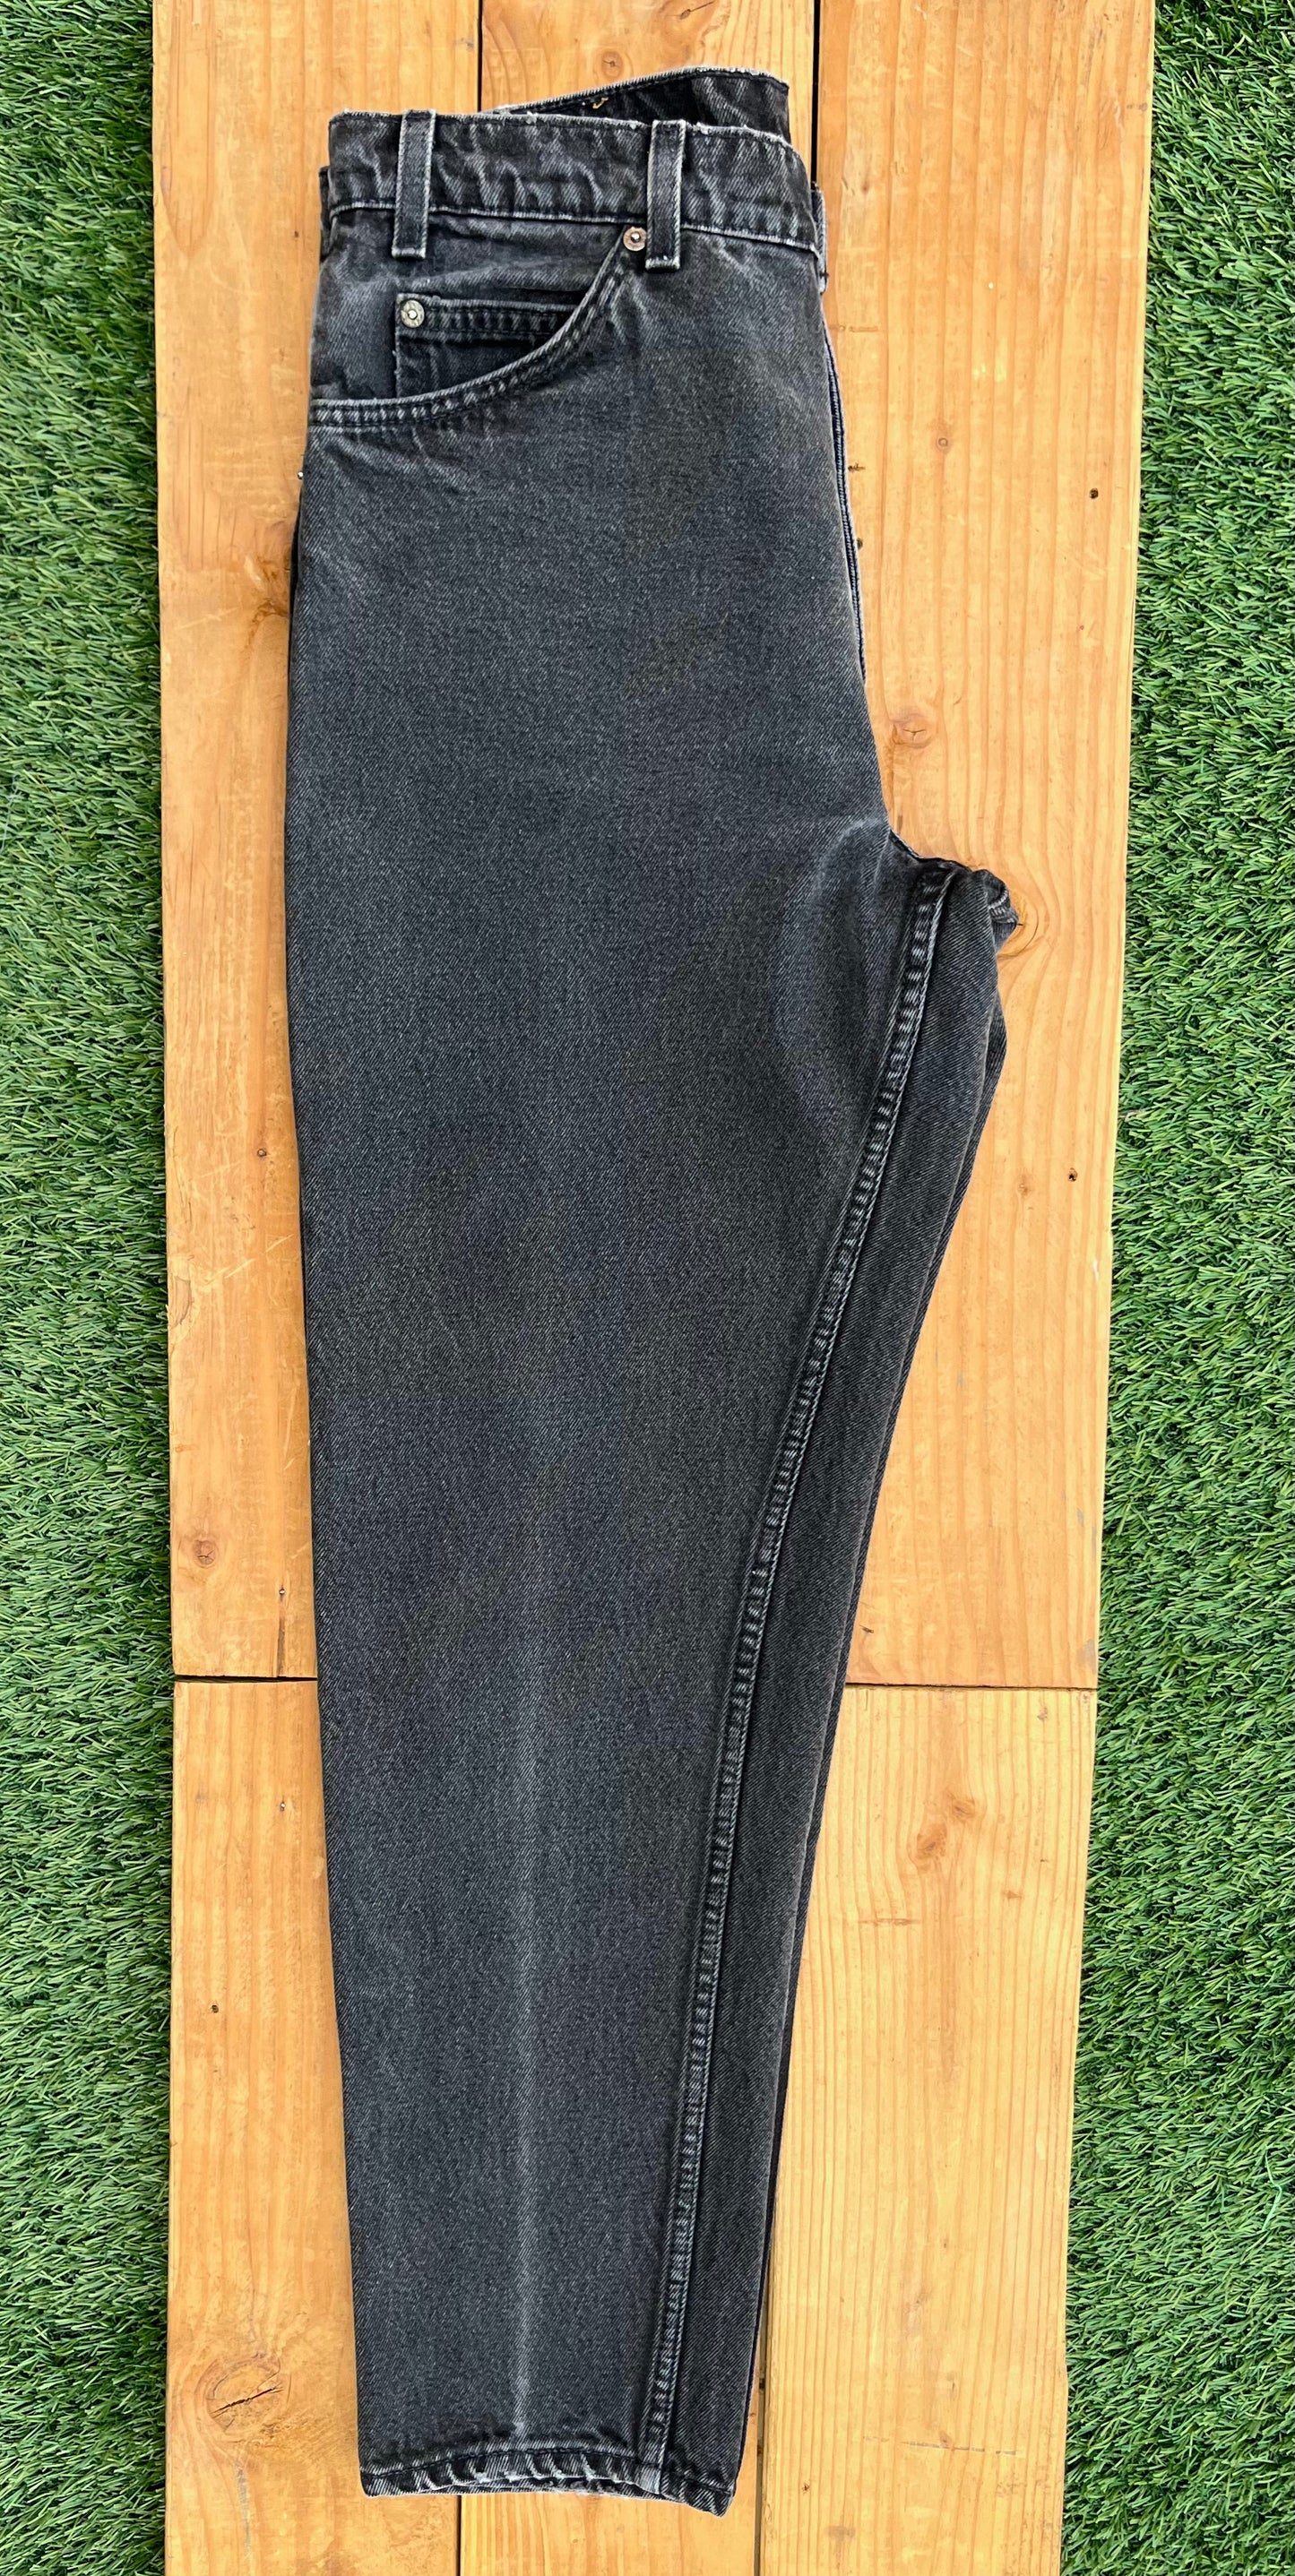 W32 550 Vintage Levi's Plain Jean